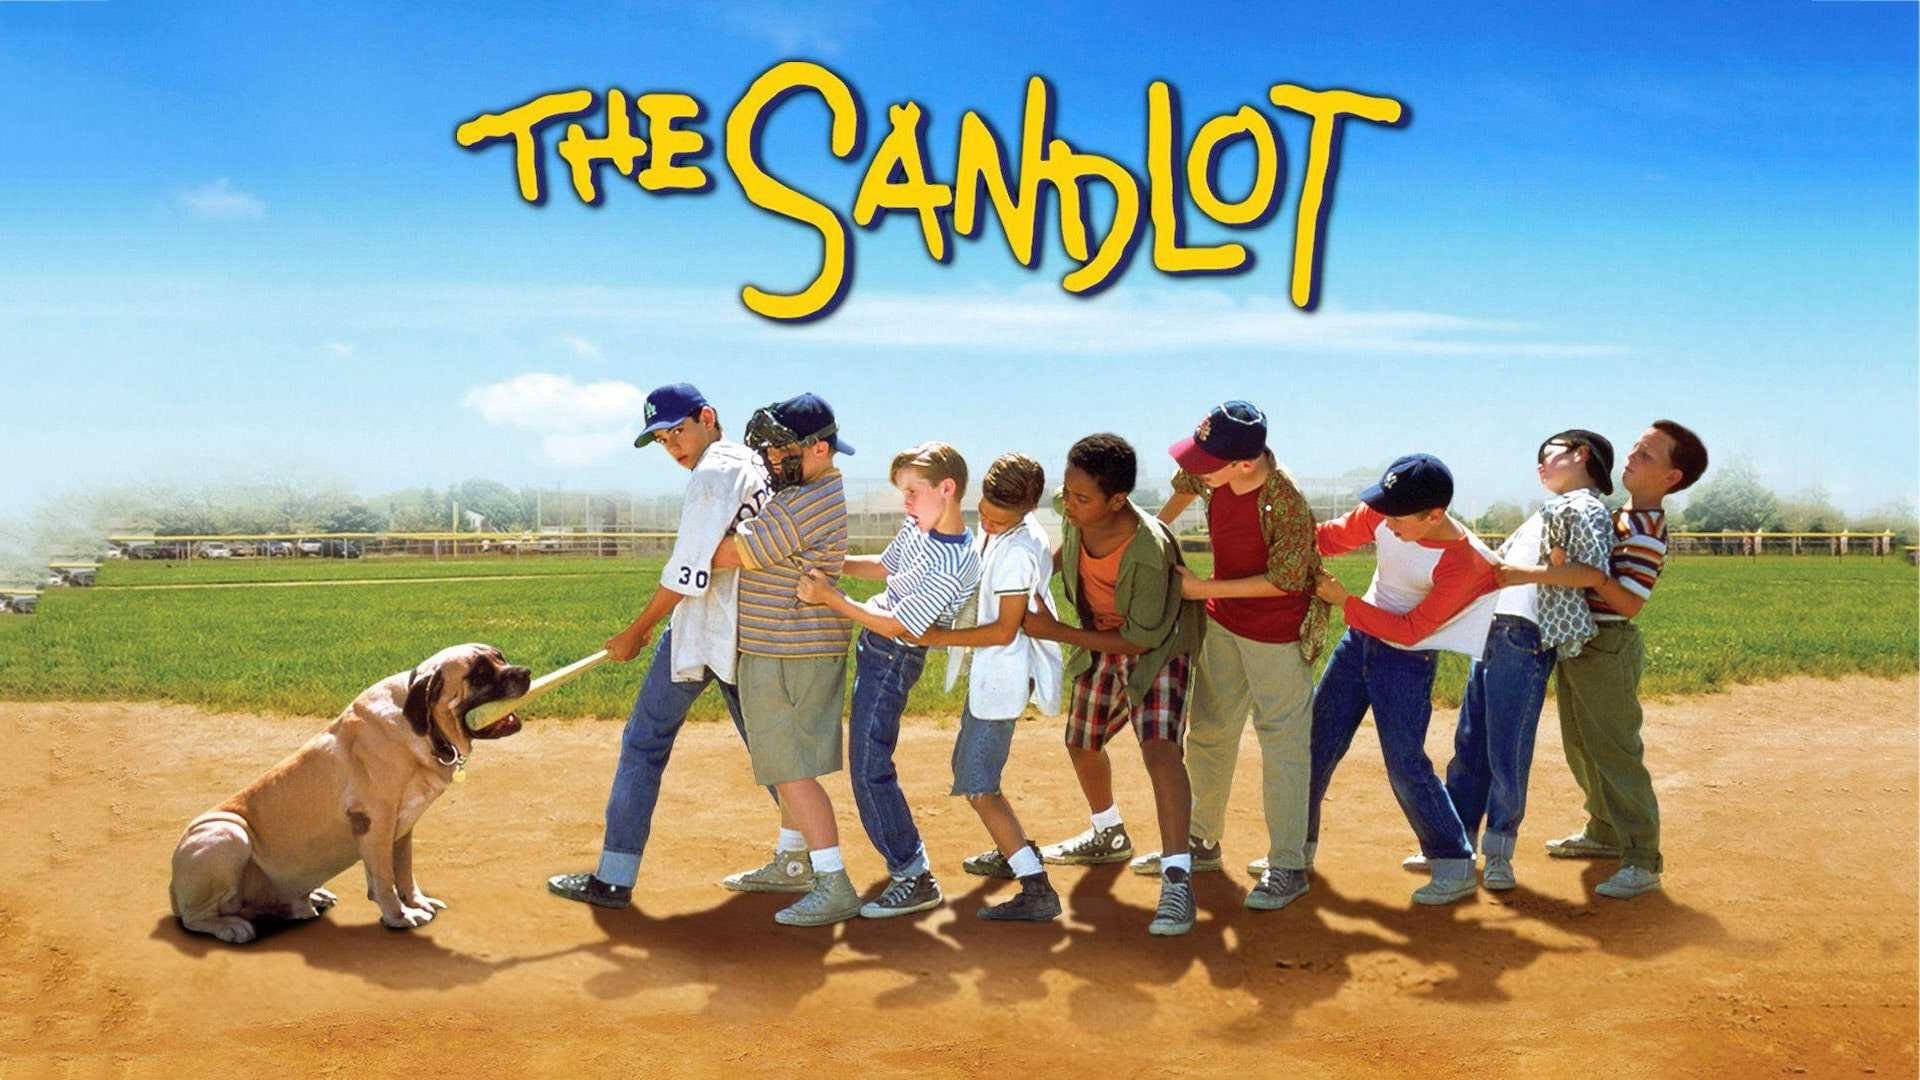 Det Sandlot Movie Poster Wallpaper